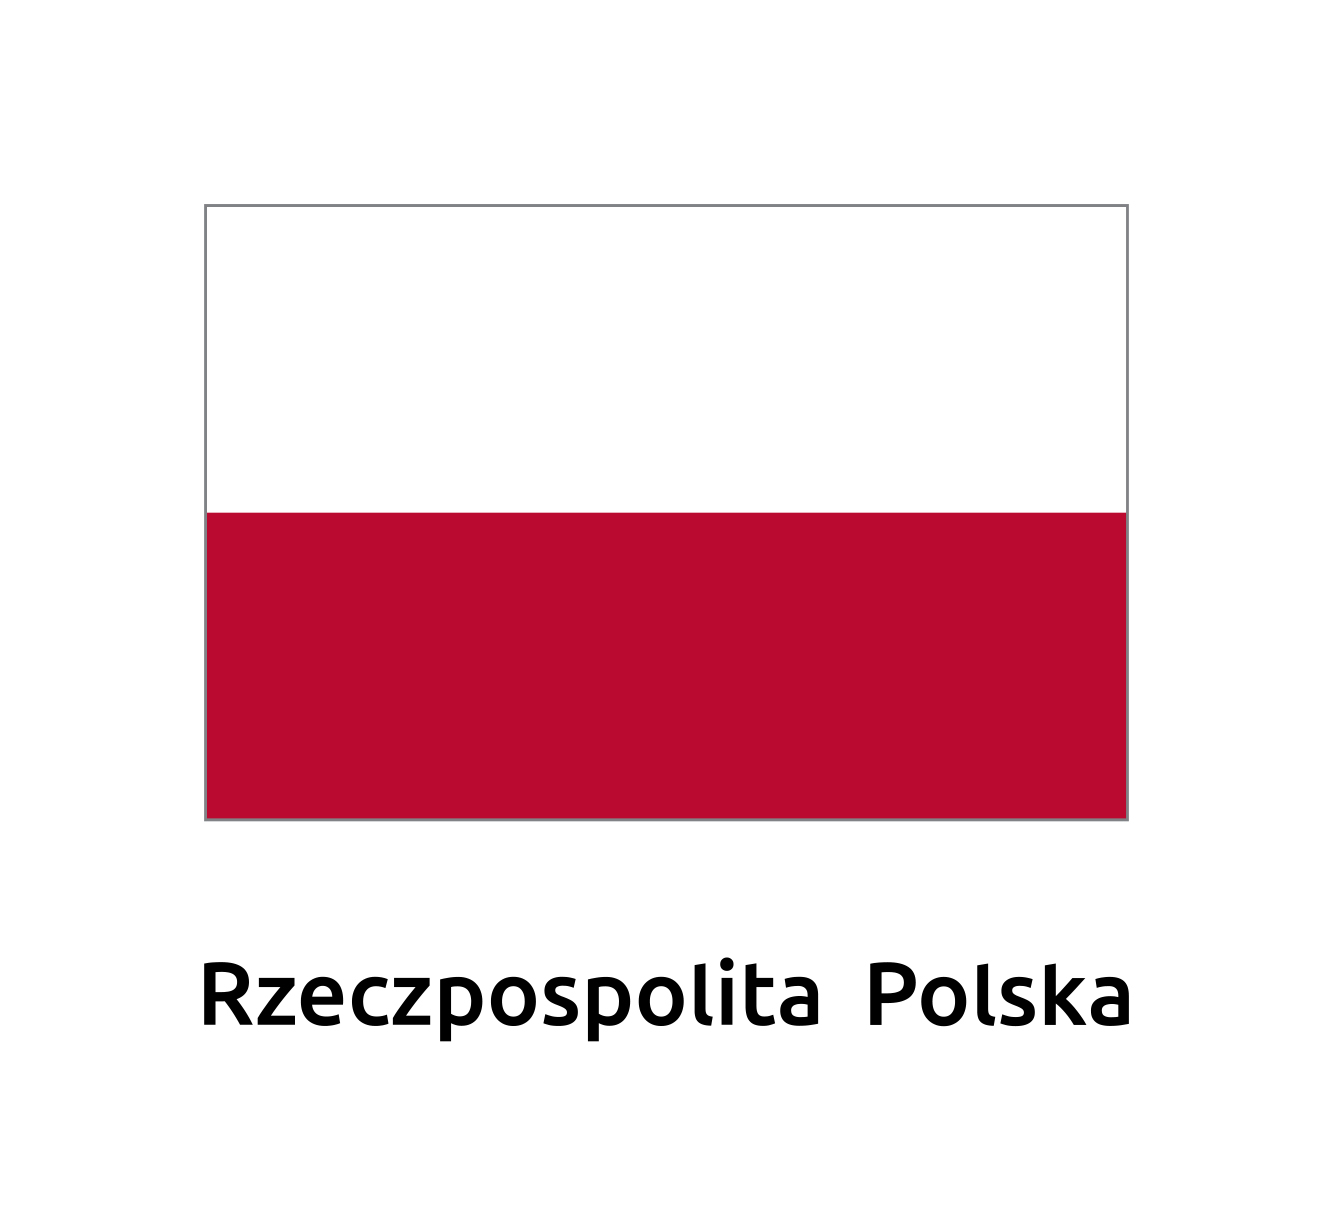 Logo Rzeczpospolitej Polskiej